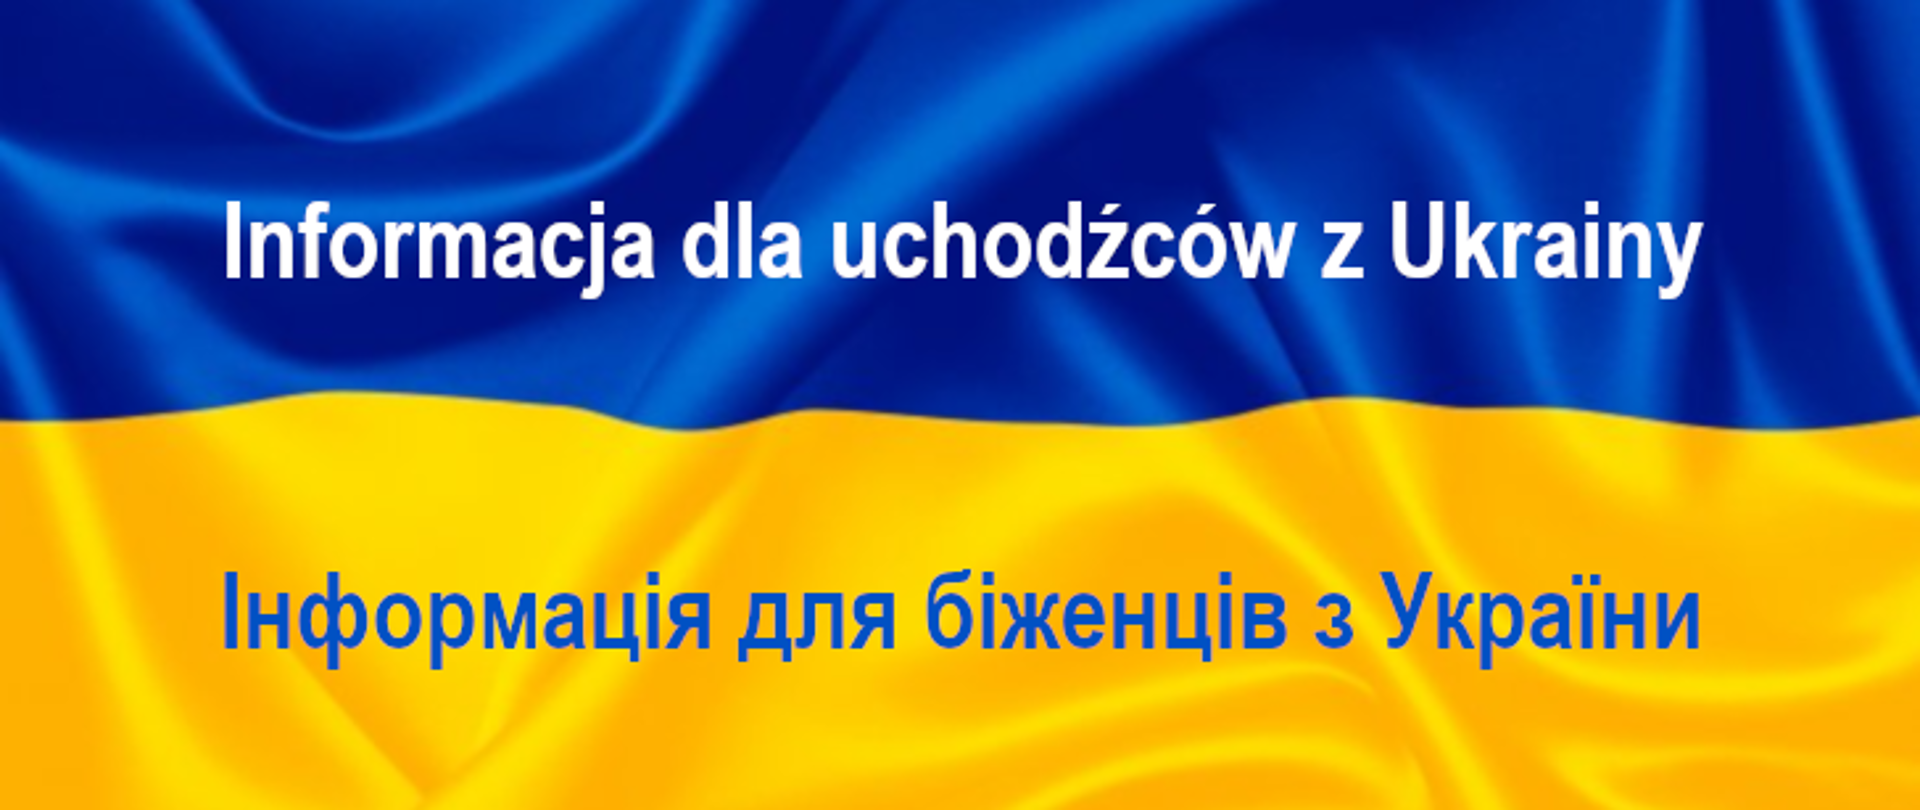 Flaga Ukrainy niebiesko-żółta z napisami w języku polski i ukraińskim